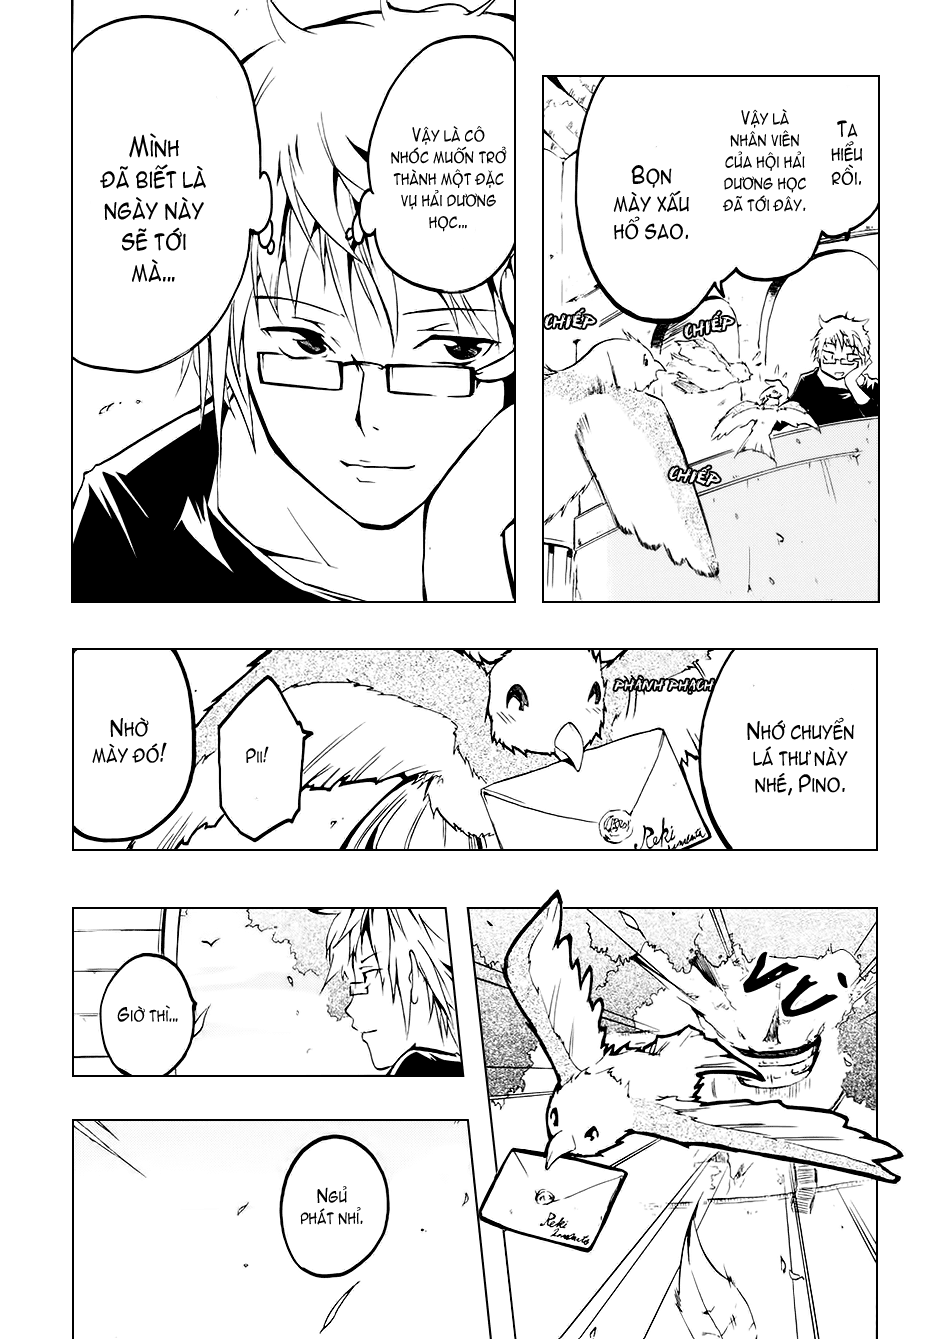 [Manga]: Esprit 0042